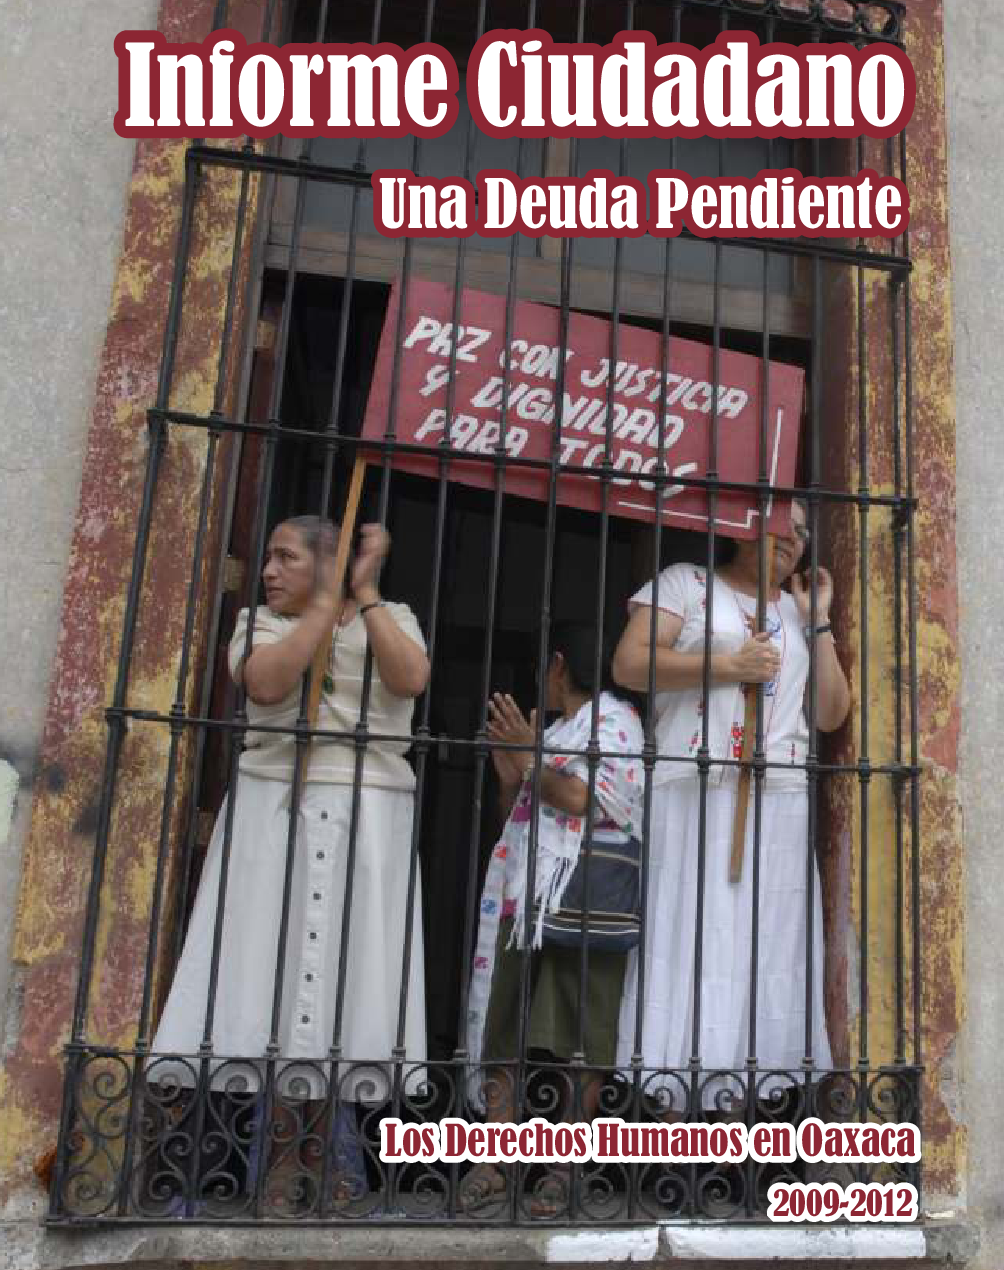 Los Derechos Humanos en Oaxaca 2009-2012